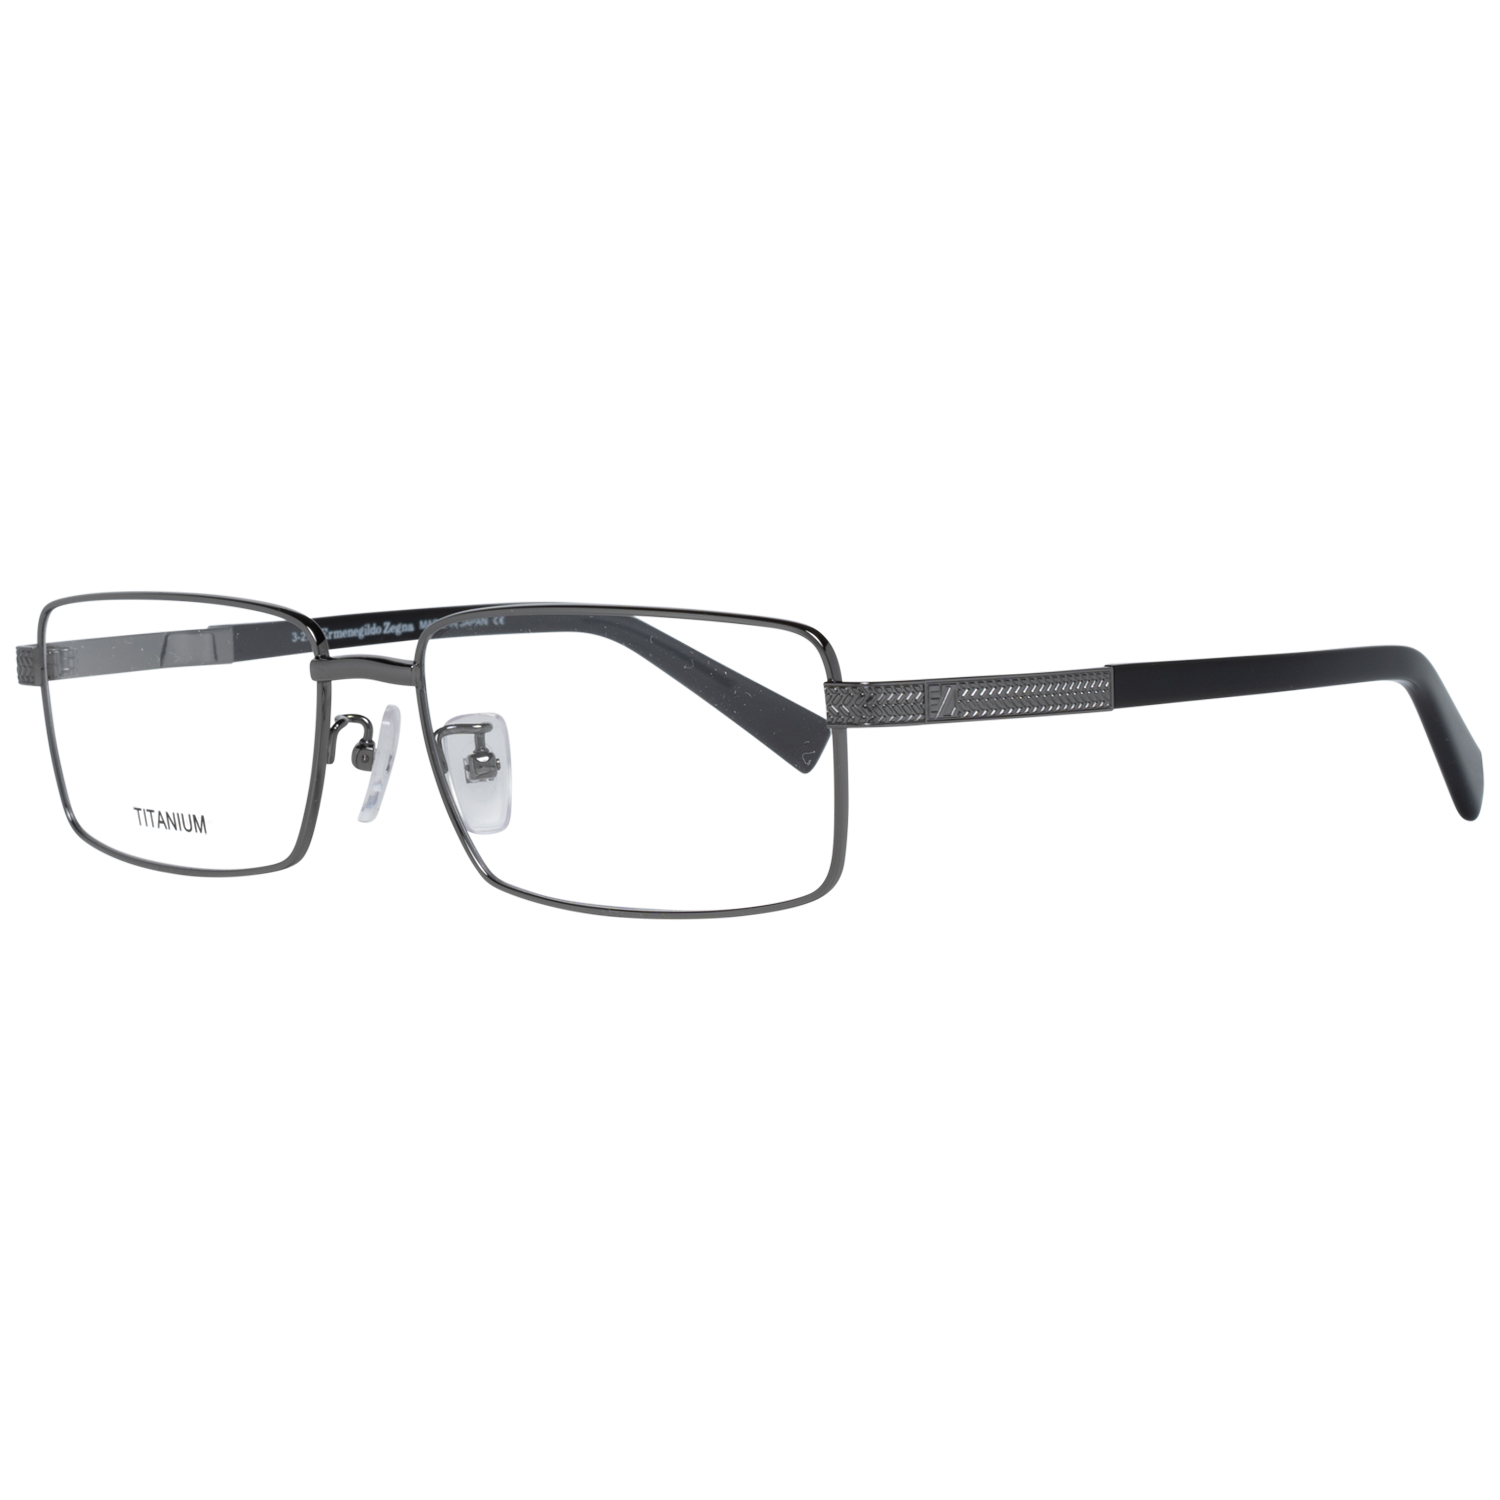 Ermenegildo Zegna Frames Ermenegildo Zegna Glasses Optical Frame EZ5094-D 008 57 Titanium Eyeglasses Eyewear UK USA Australia 